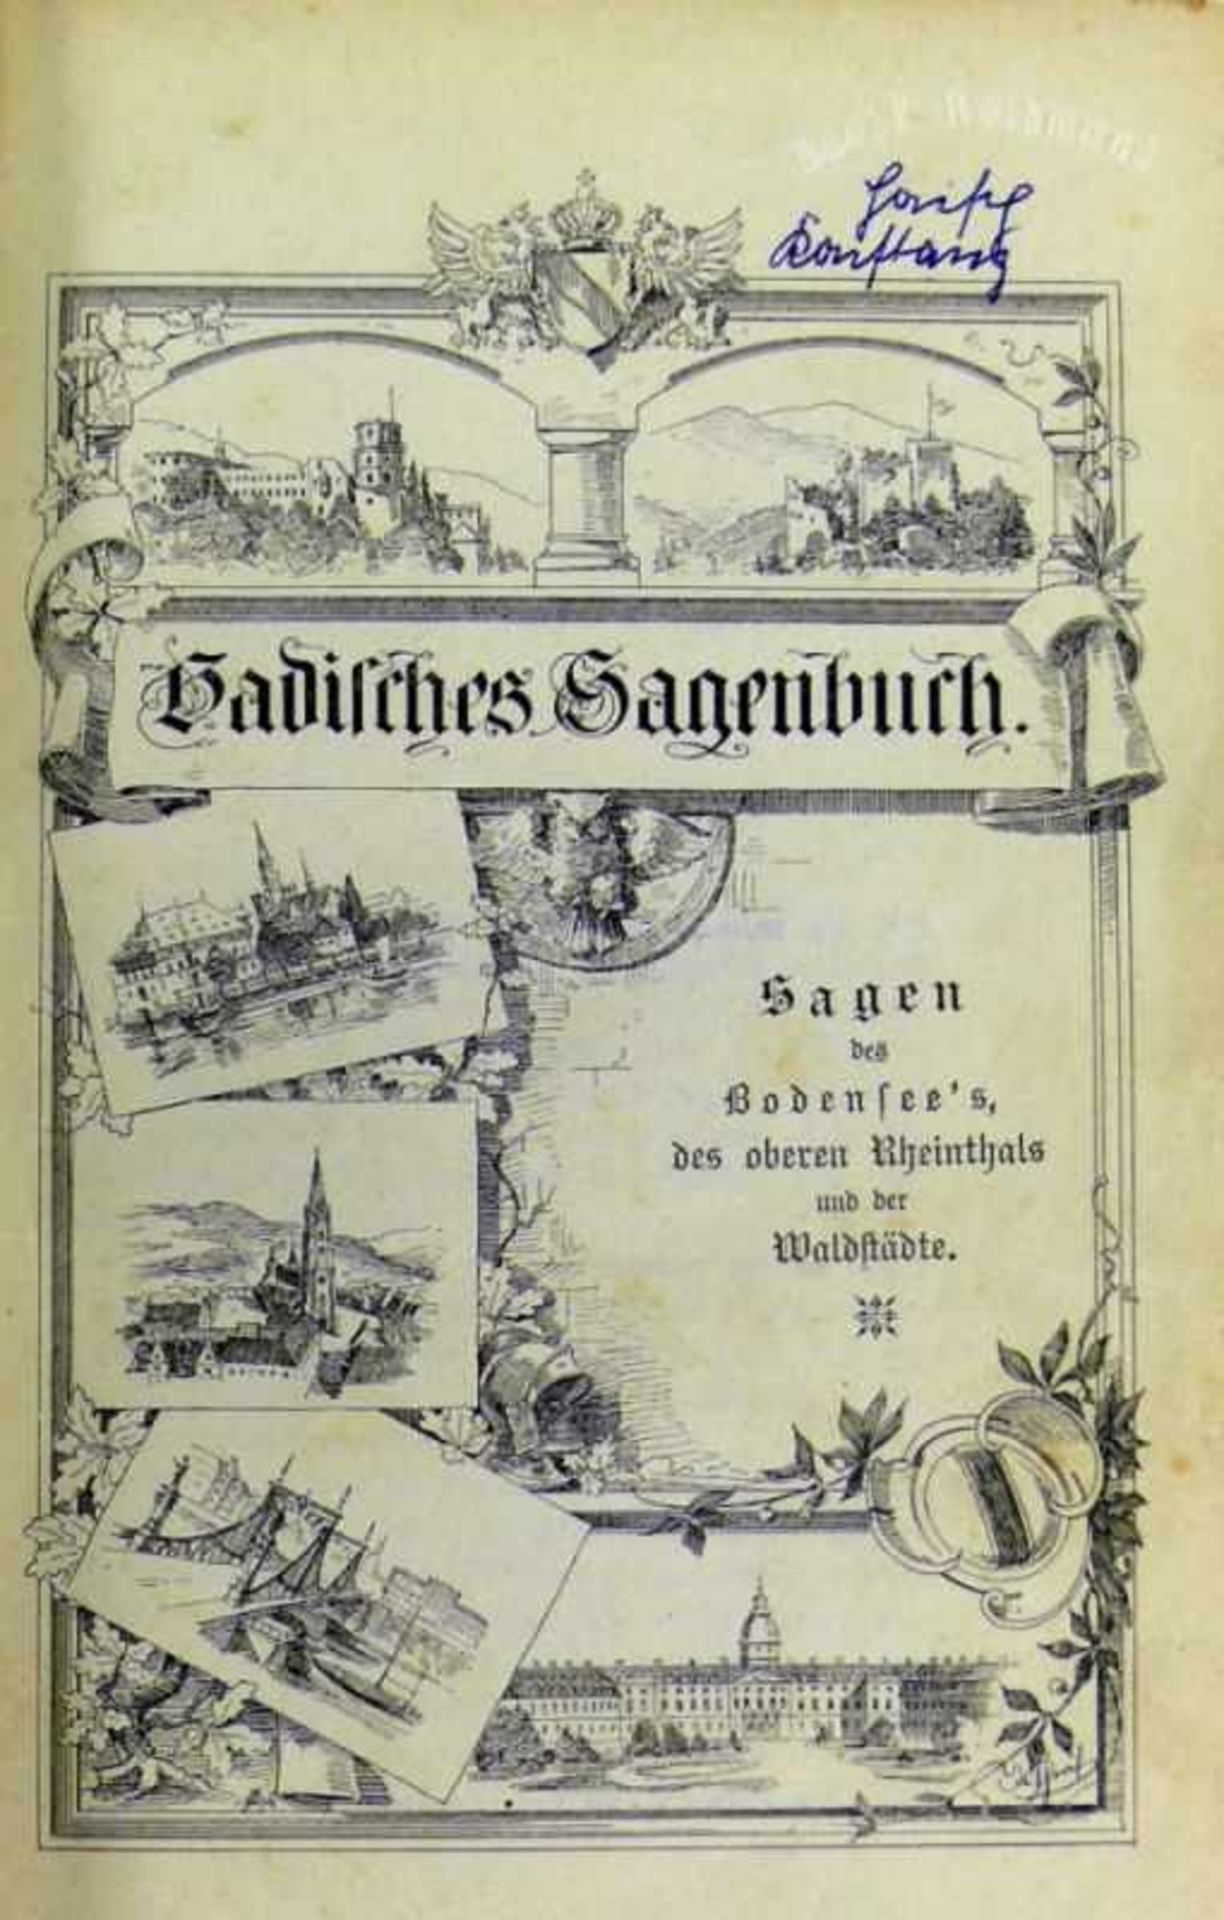 Badisches Sagenbuch Sagen des Bodensee's, des oberen Rheintals und der Waldstädte; Freiburg 1898;